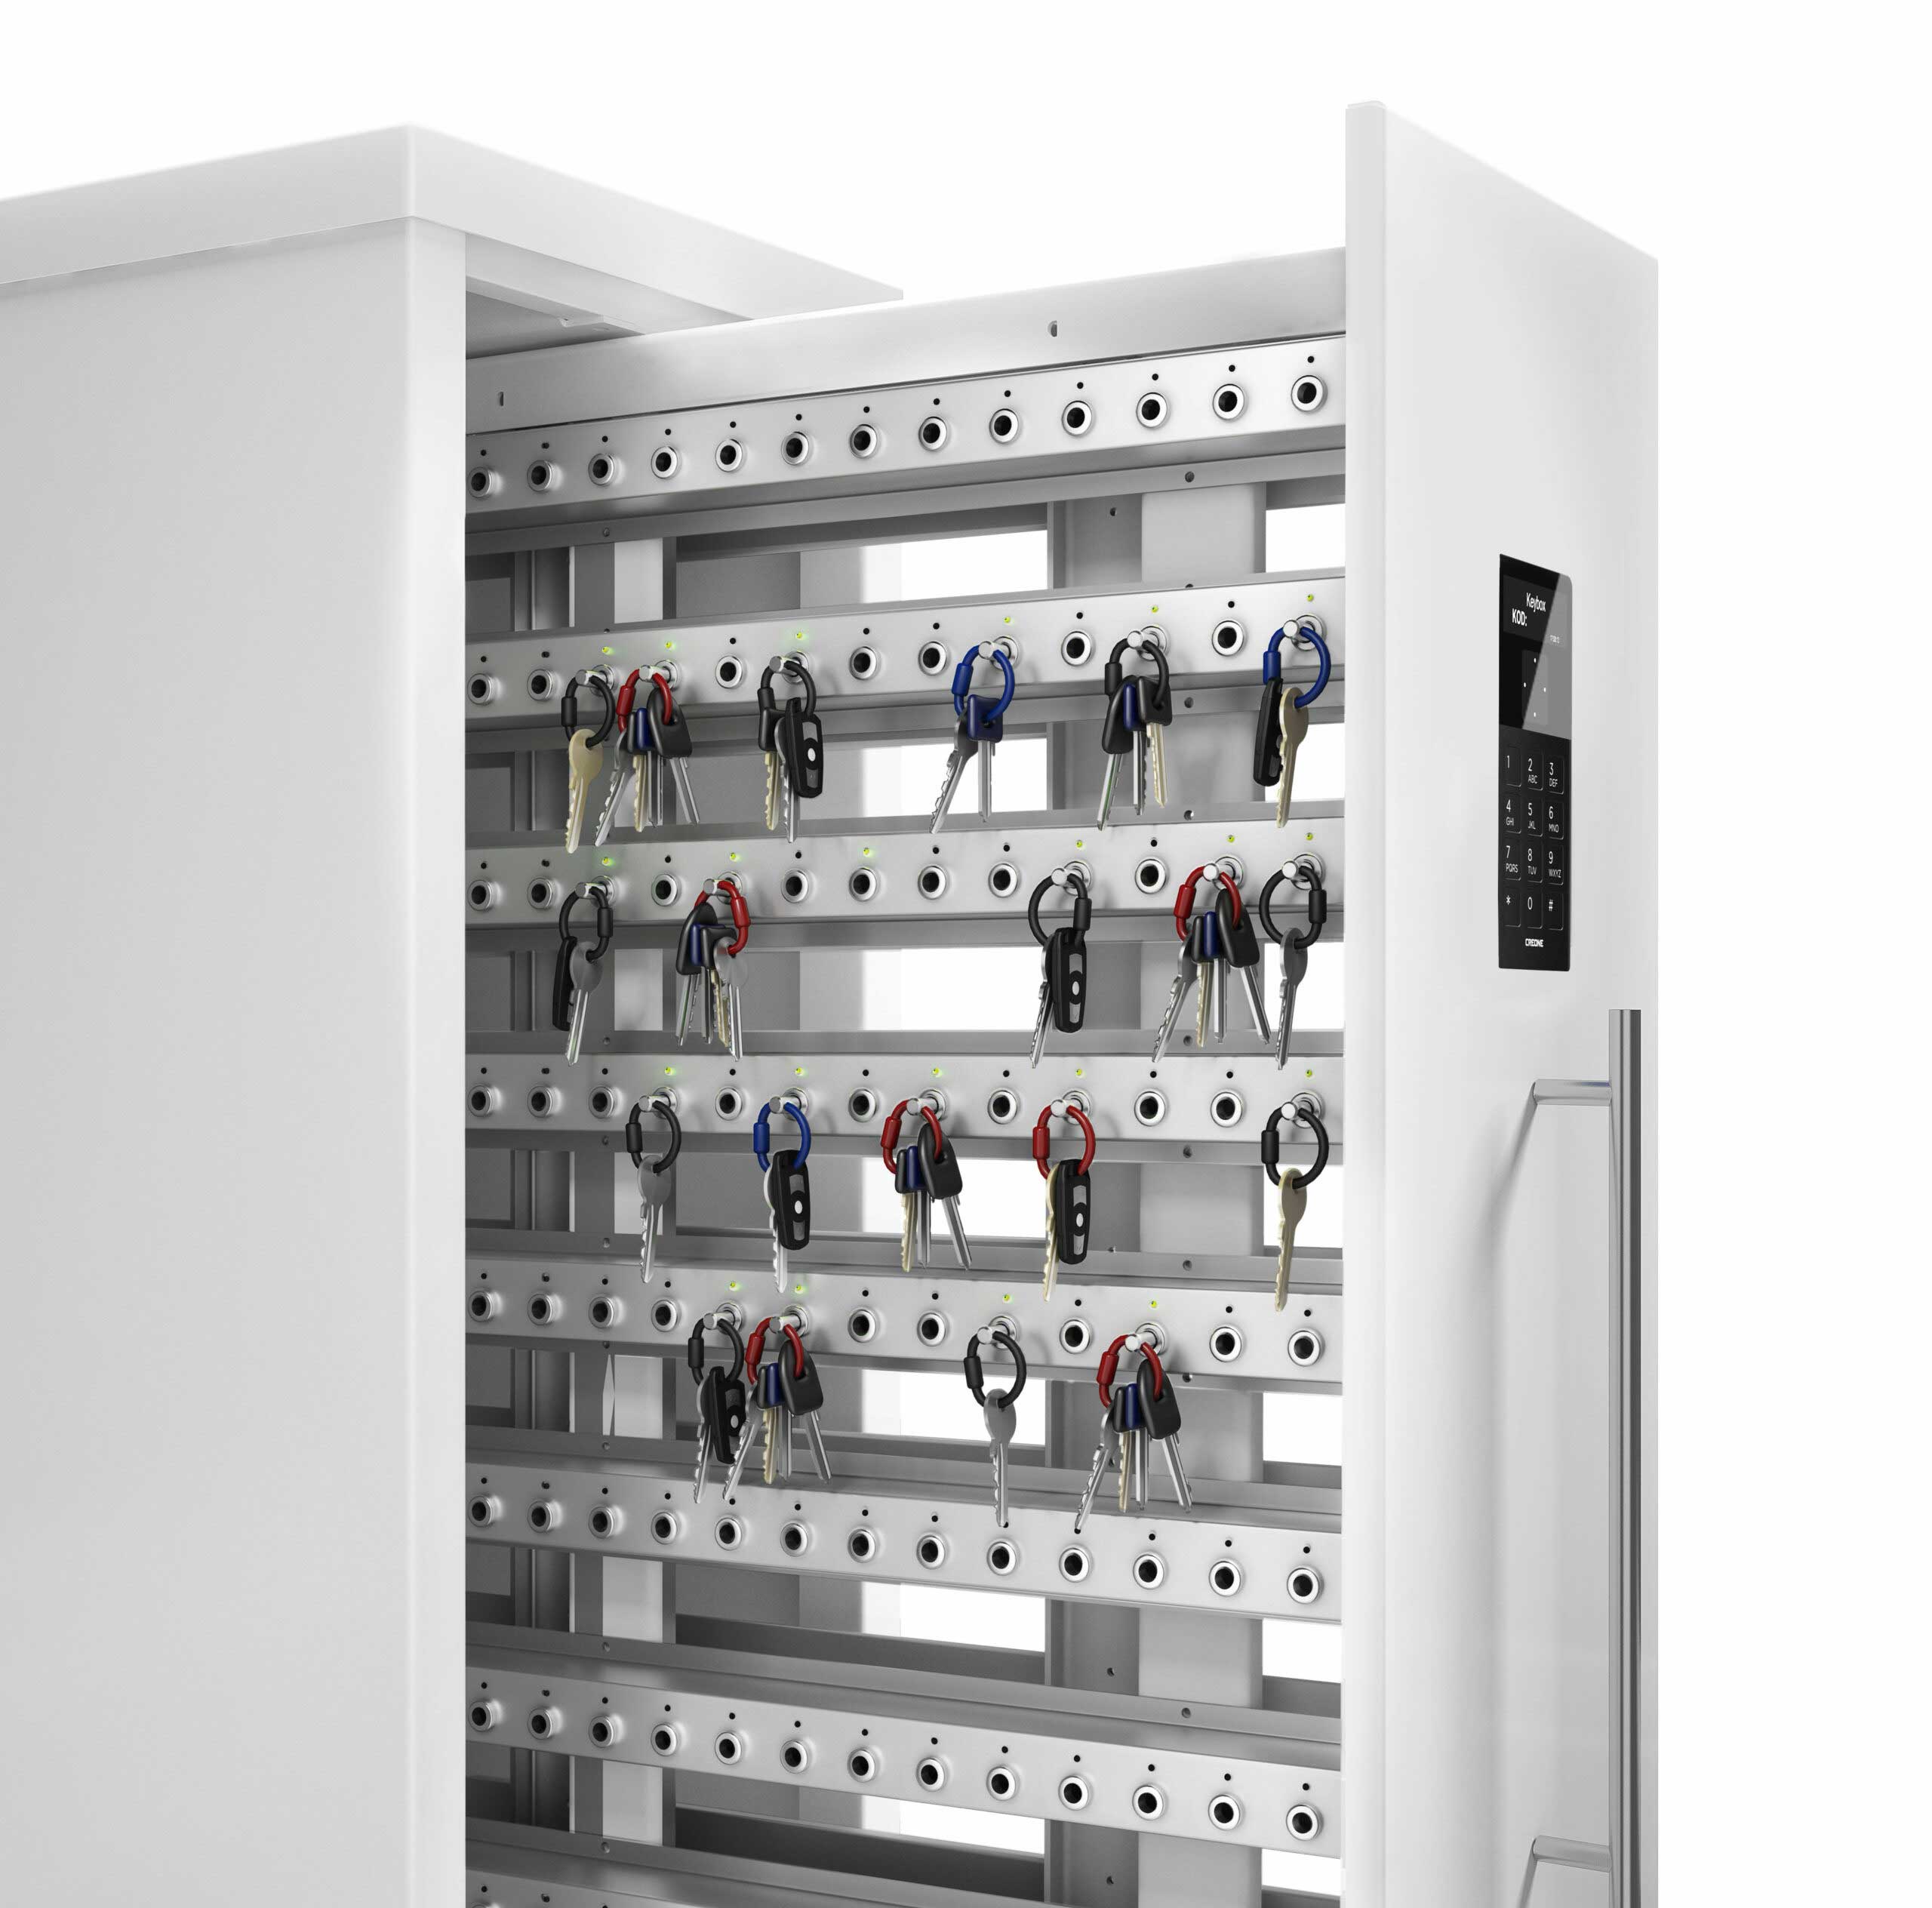 Armoire à clés 9600 SC de la gamme Keycontrol. Armoire ouverte montrant les racks qui organisent la gestion des clés.